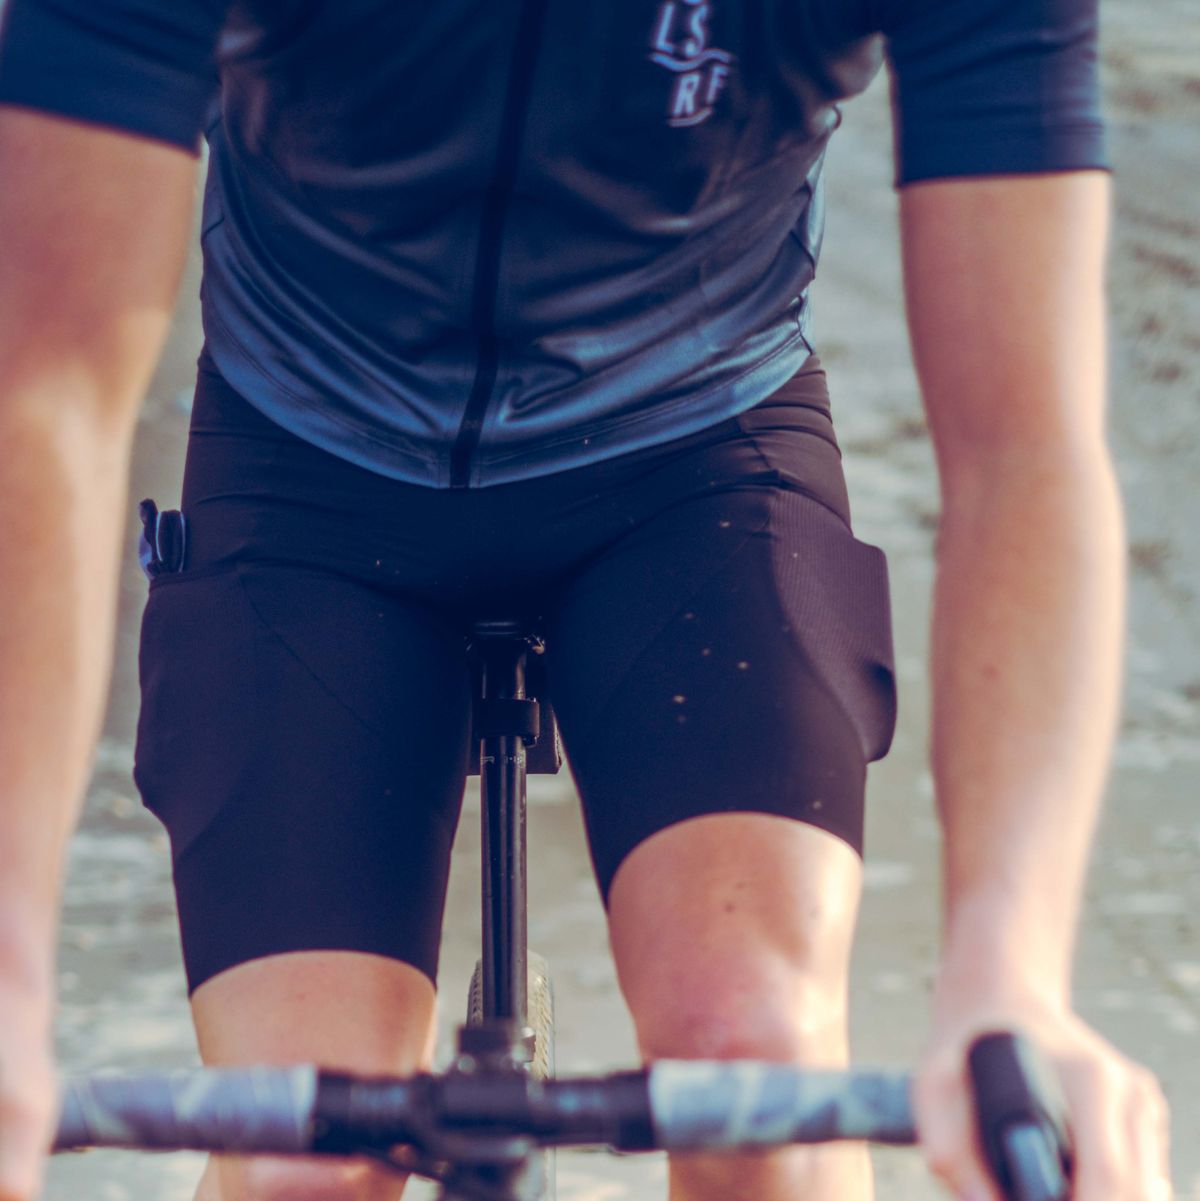 Grootte Snoep markering Voorkom dat je edele delen beschadigen met fietsen | Bicycling